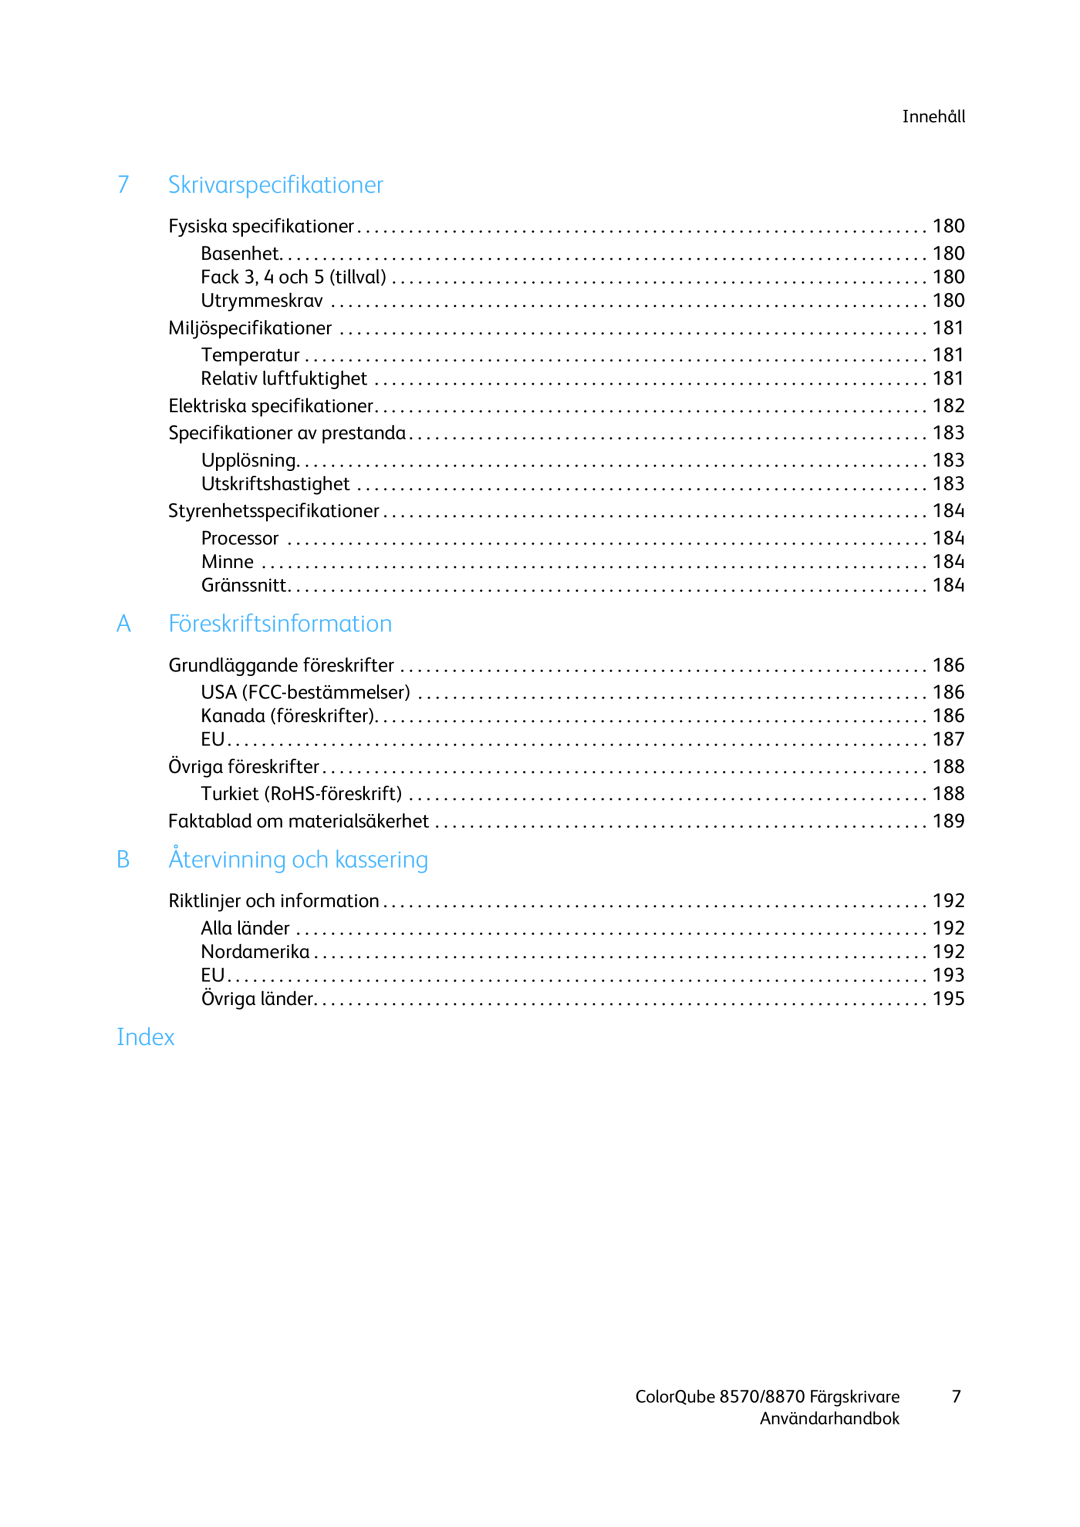 Xerox 8570 / 8870 manual 7Skrivarspecifikationer, AFöreskriftsinformation, BÅtervinning och kassering, Index, Innehåll 